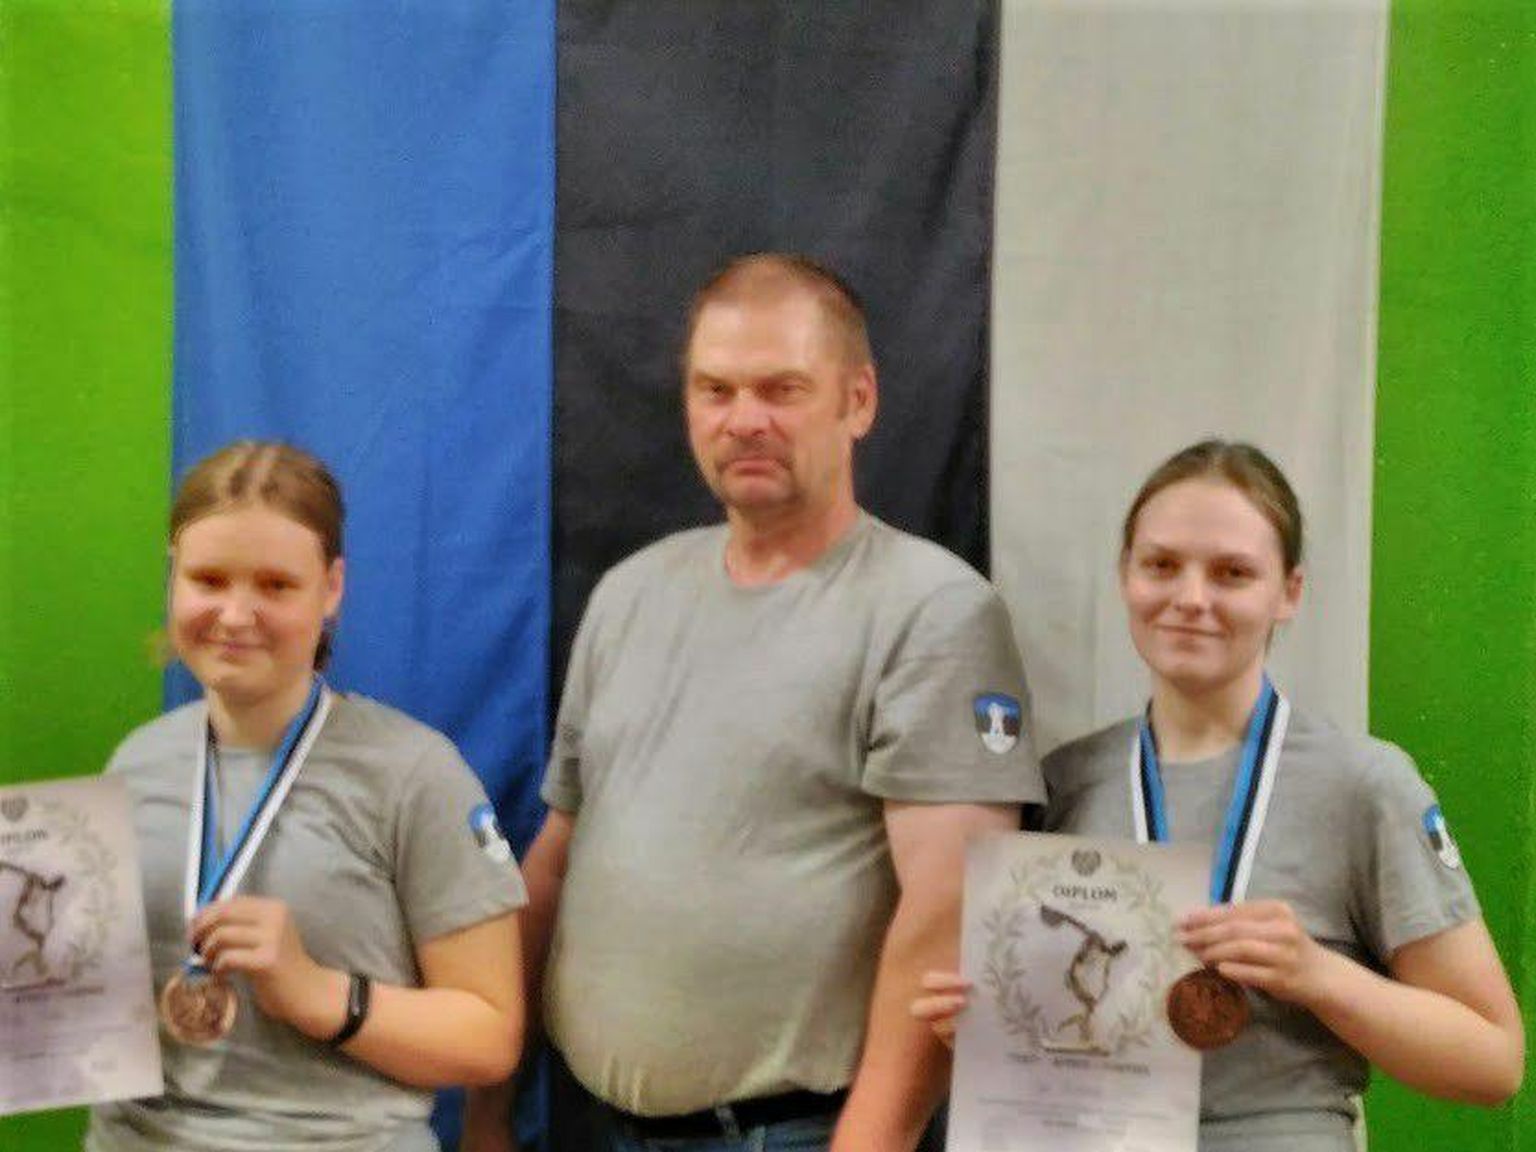 Kaitseliidu meistrivõistlustelt võitsid laskurid Riti Põder (vasakul) ja Ege Orlovski pronksmedali, keskel seisab treener Alar Sakkooli.

Erakogu